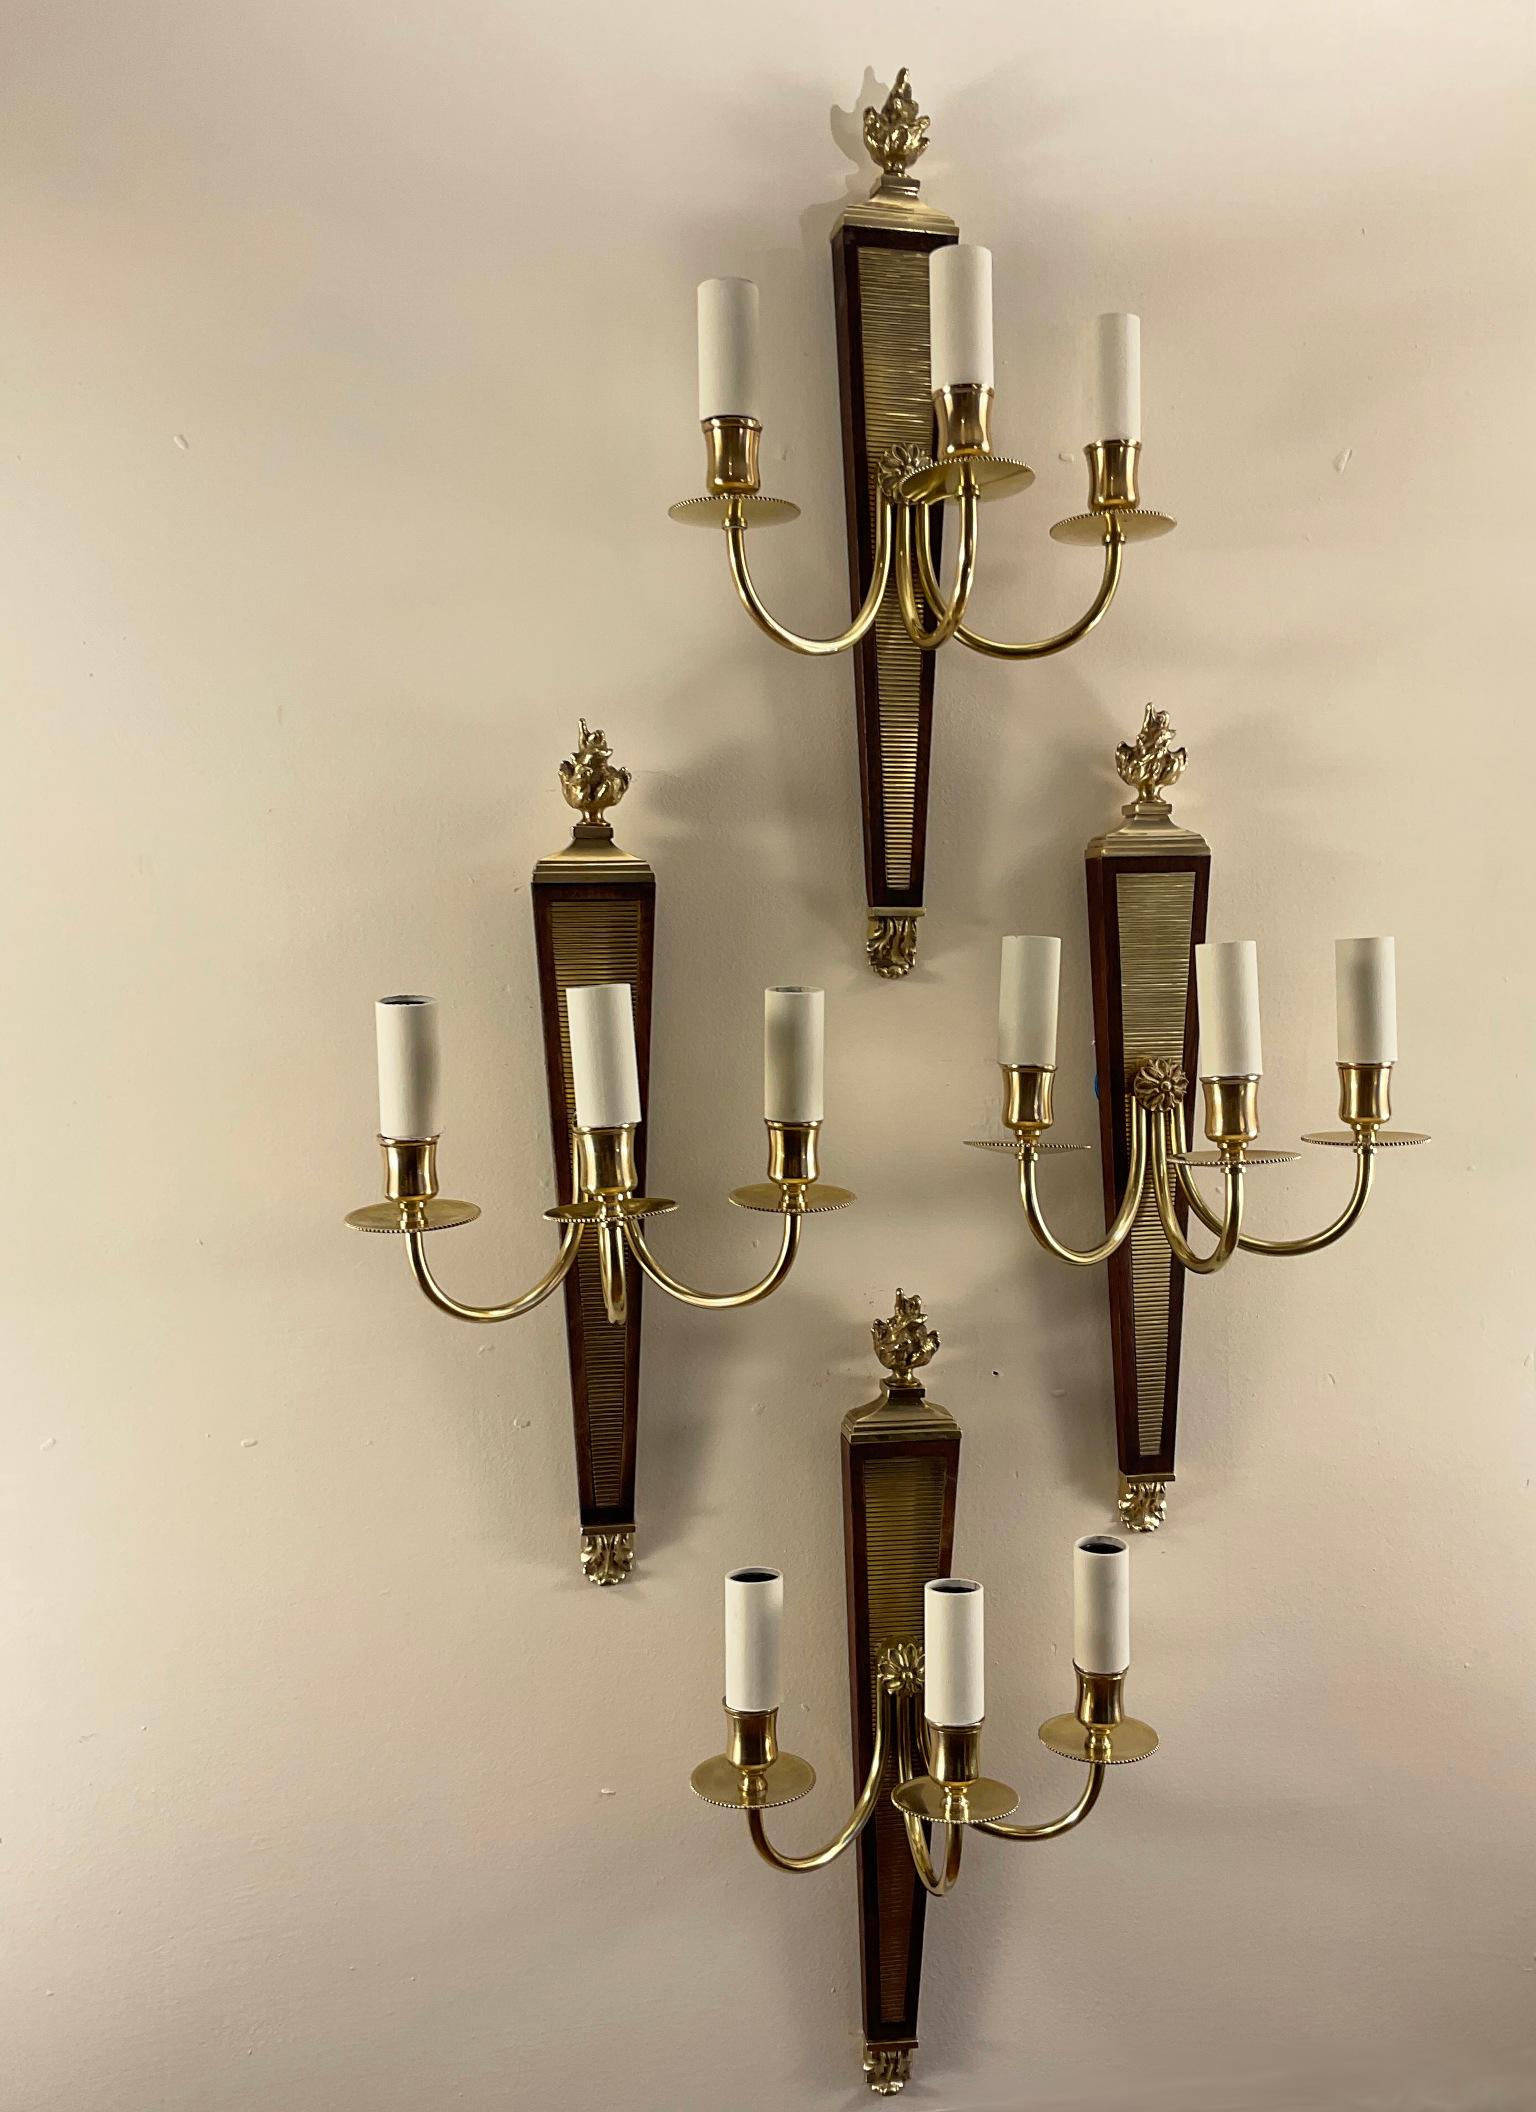 Ensemble de quatre appliques attribuées à André Arbus (1903-1969), en laiton doré et acajou, datant des années 1940.
Support en acajou avec base cannelée en laiton, d'où partent trois bras de lumière se terminant par des torches ornementales en